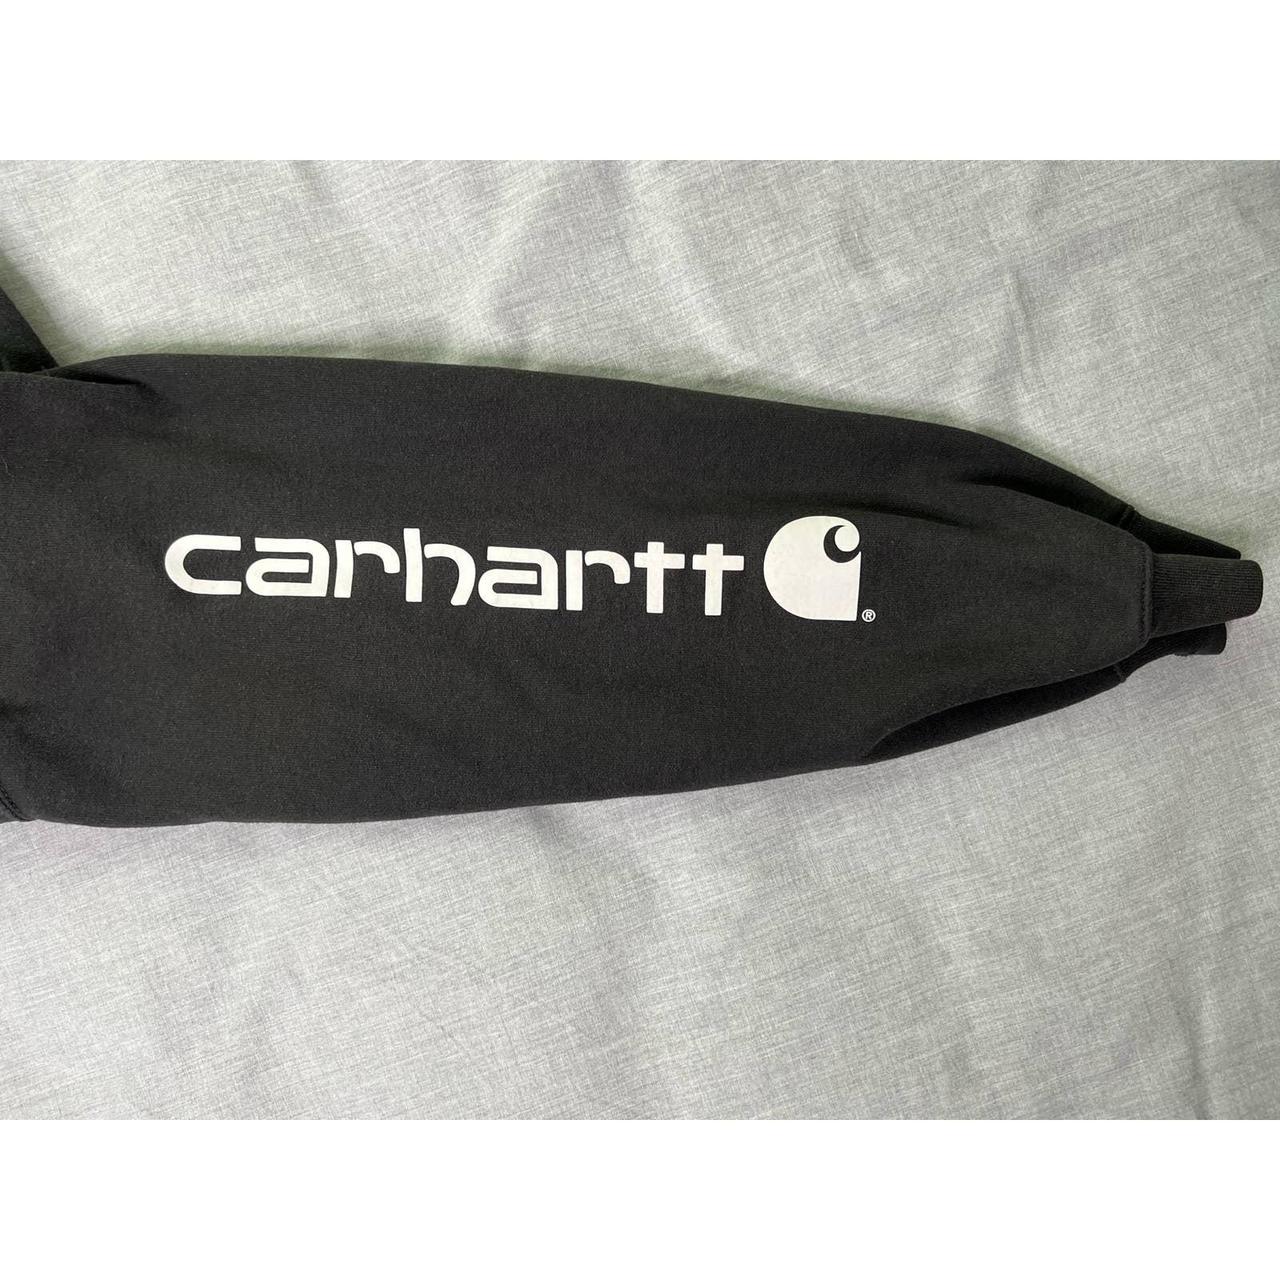 Carhartt Sleeve Logo Pullover Hoodie Sweatshirt... - Depop